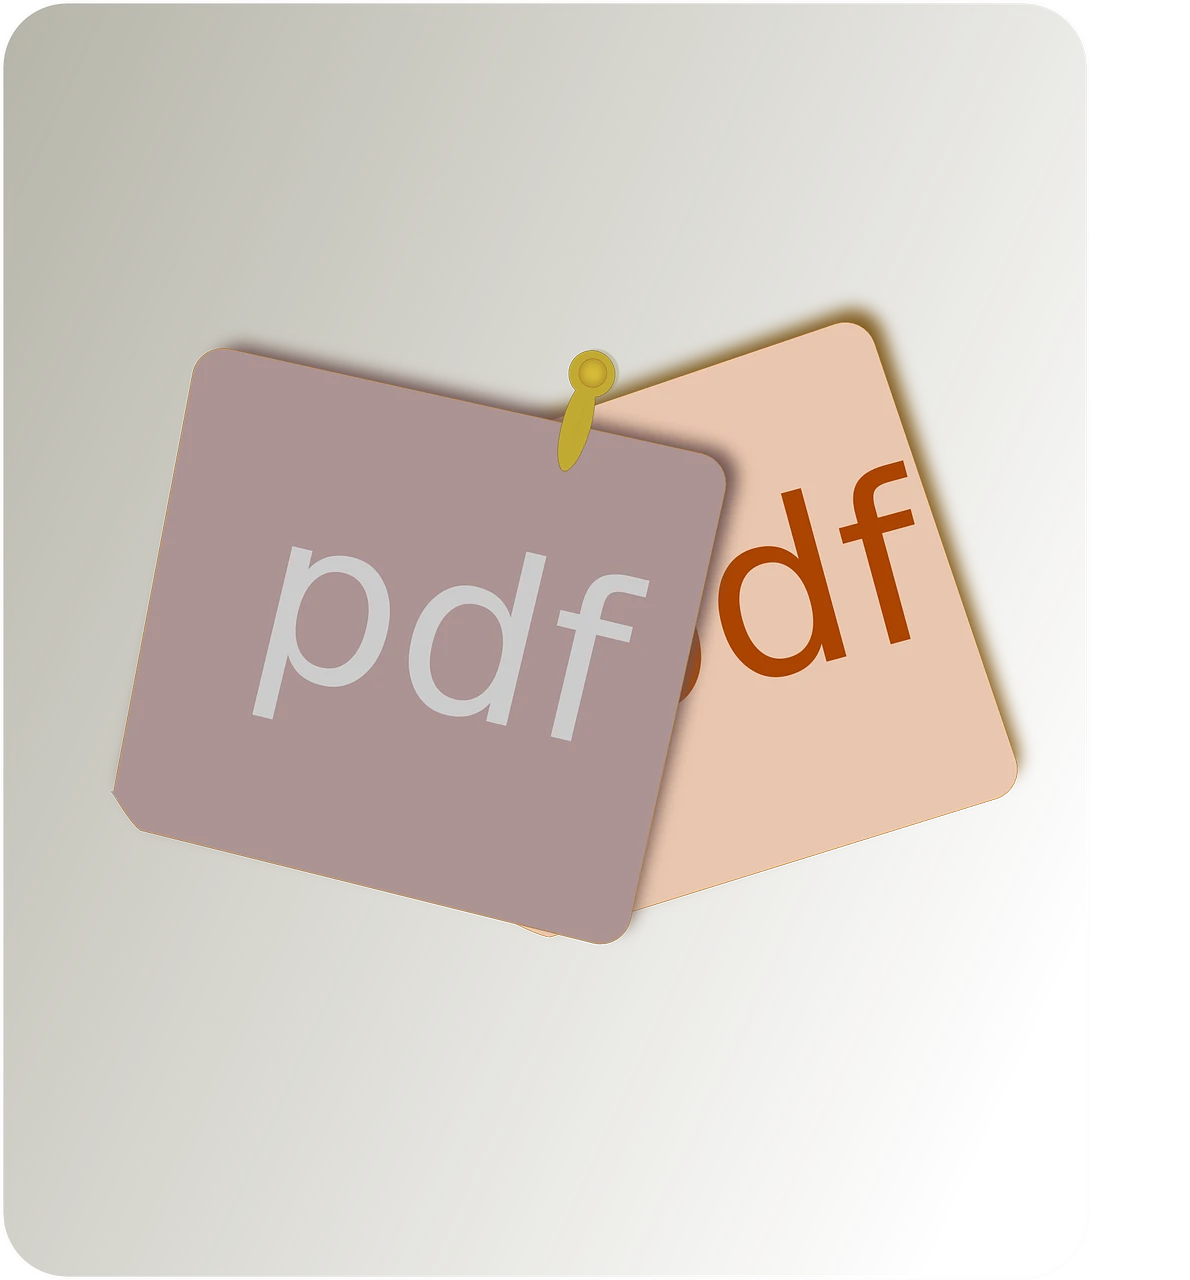 PDF可以修改内容吗？有什么注意的事项？